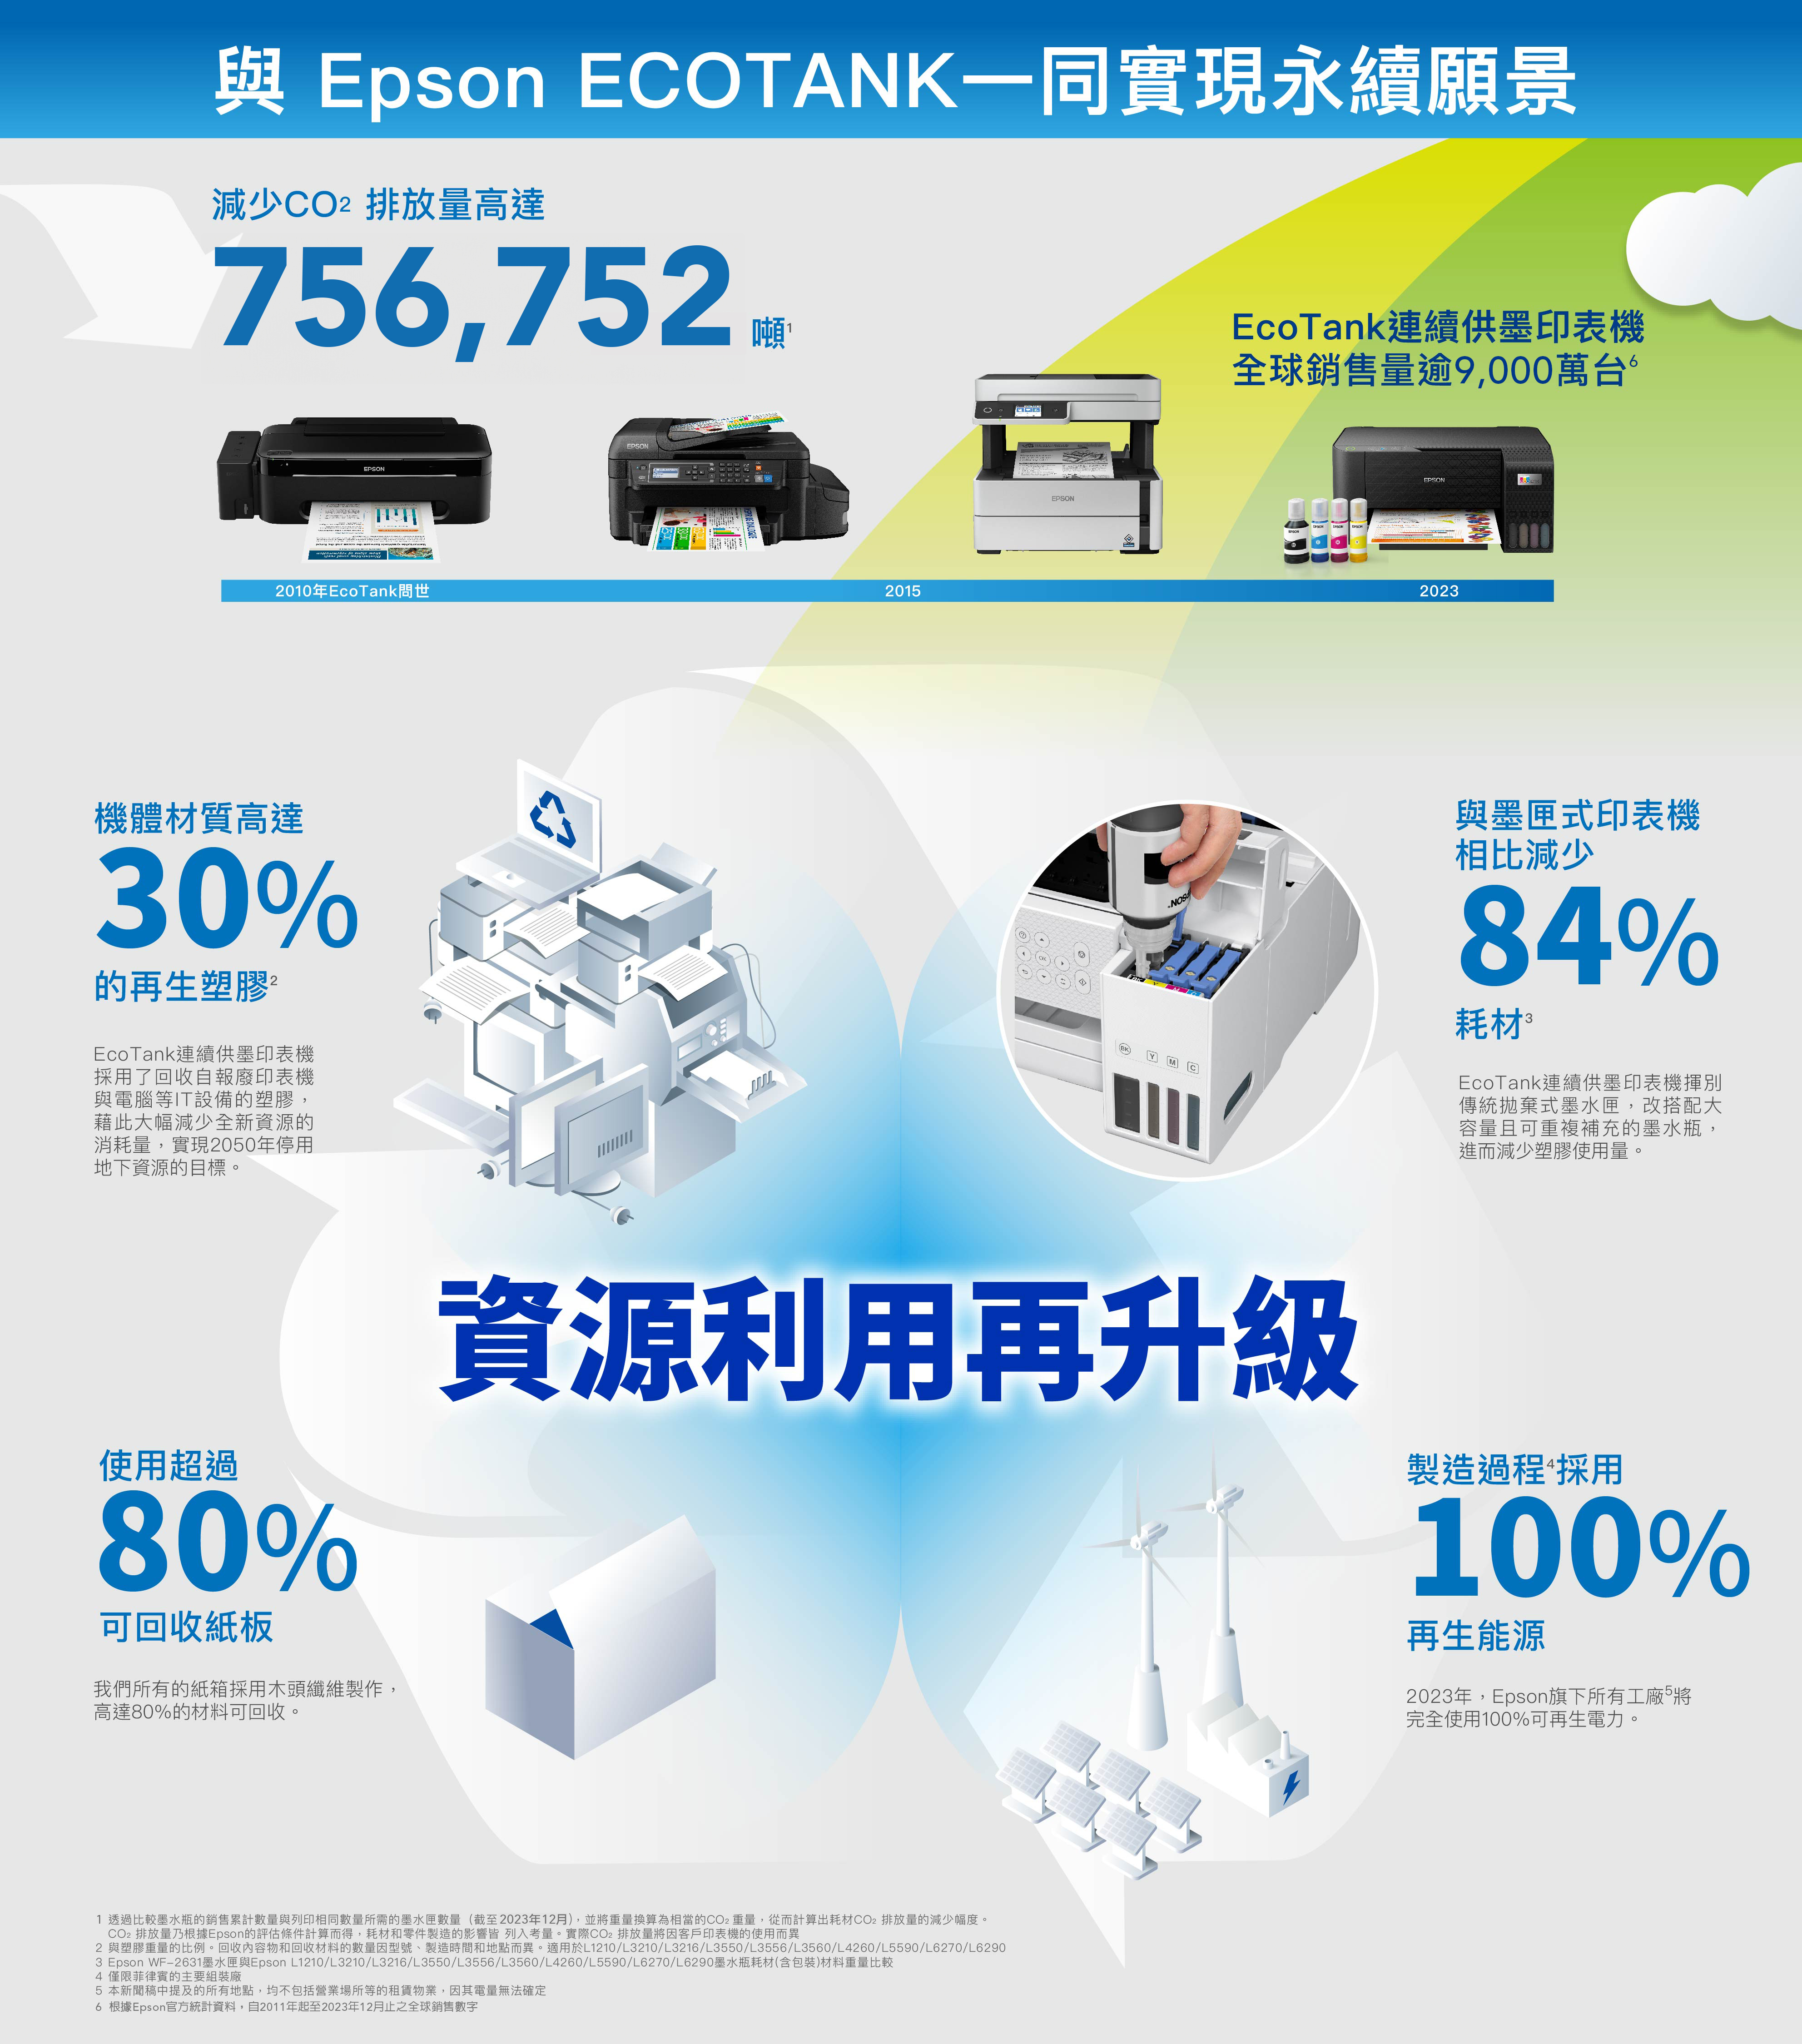 Epson EOTNK一同實現永續願景減少排放量高達756,752噸EcoTank連續供墨印表機全球銷售量逾9,000萬台  2010年EcoTank問世機體材質高達30%的再生塑膠EcoTank連續供墨印表機採用了回收自報廢印表機與電腦等IT設備的塑膠,藉此大幅減少全新資源的消耗量,實現2050年停用地下資源的目標。 DIALOGUE2015EPSONEPSONEPSONEPSONEPSONACEPSON2023與墨匣式印表機相比減少84%耗材 EcoTank連續供墨印表機揮別傳統拋棄式墨水匣,改搭配大容量且可重複補充的墨水瓶,進而減少塑膠使用量。BKYM使用超過80%可回收紙板我們所有的紙箱採用木頭纖維製作,高達80%的材料可回收。資源利用再升級製造過程 採用100%再生能源2023年,Epson旗下所有工廠5完全使用100%可再生電力。1 透過比較墨水瓶的銷售累計數量與列印相同數量所需的墨水匣數量(截至2023年12月),並將重量換算為相當的CO2重量,從而計算出耗材CO2排放量的減少幅度。CO2排放量乃根據Epson的評估條件計算而得,耗材和零件製造的影響皆 列入考量。實際CO2排放量將因客戶印表機的使用而異2 與塑膠重量的比例。回收內容物和回收材料的數量因型號、製造時間和地點而異。適用於L1210/L3210/L3216/L3550/L3556/L3560/L4260/L5590/L6270/L62903 Epson WF-2631墨水匣與Epson L1210/L3210/L3216/L3550/L3556/L3560/L4260/L5590/L6270/L6290墨水瓶耗材(含包裝)材料重量比較4 僅限菲律賓的主要組裝廠5 本新聞稿中提及的所有地點,均不包括營業場所等的租賃物業,因其電量無法確定6 根據Epson官方統計資料,自2011年起至2023年12月止之全球銷售數字